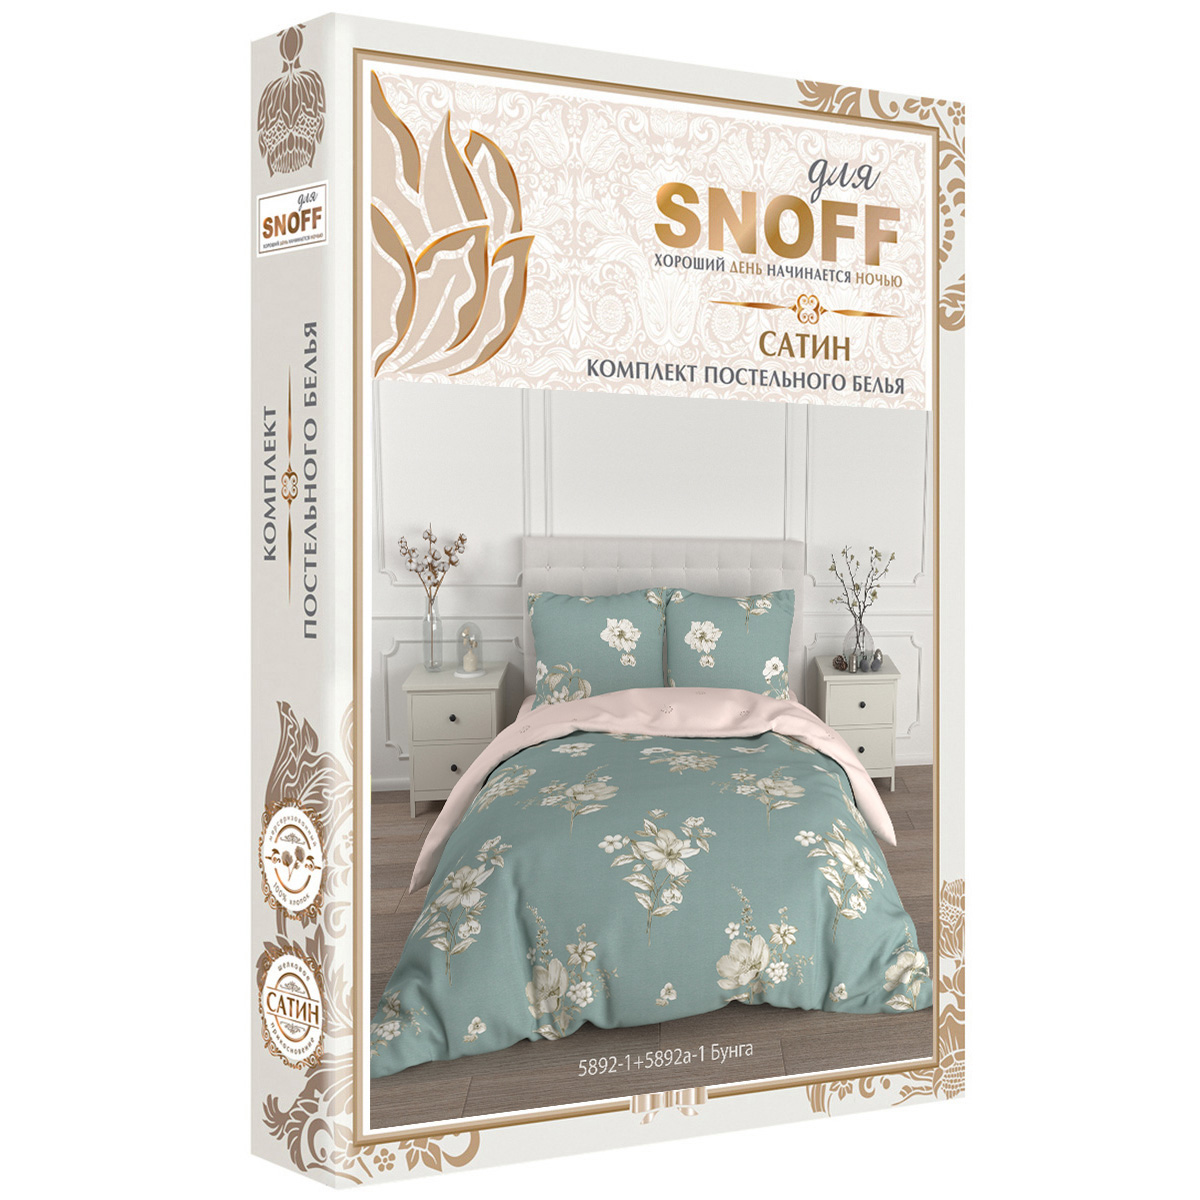 Комплект постельного белья для SNOFF Бунга 2-спальный макси сатин - фото 7